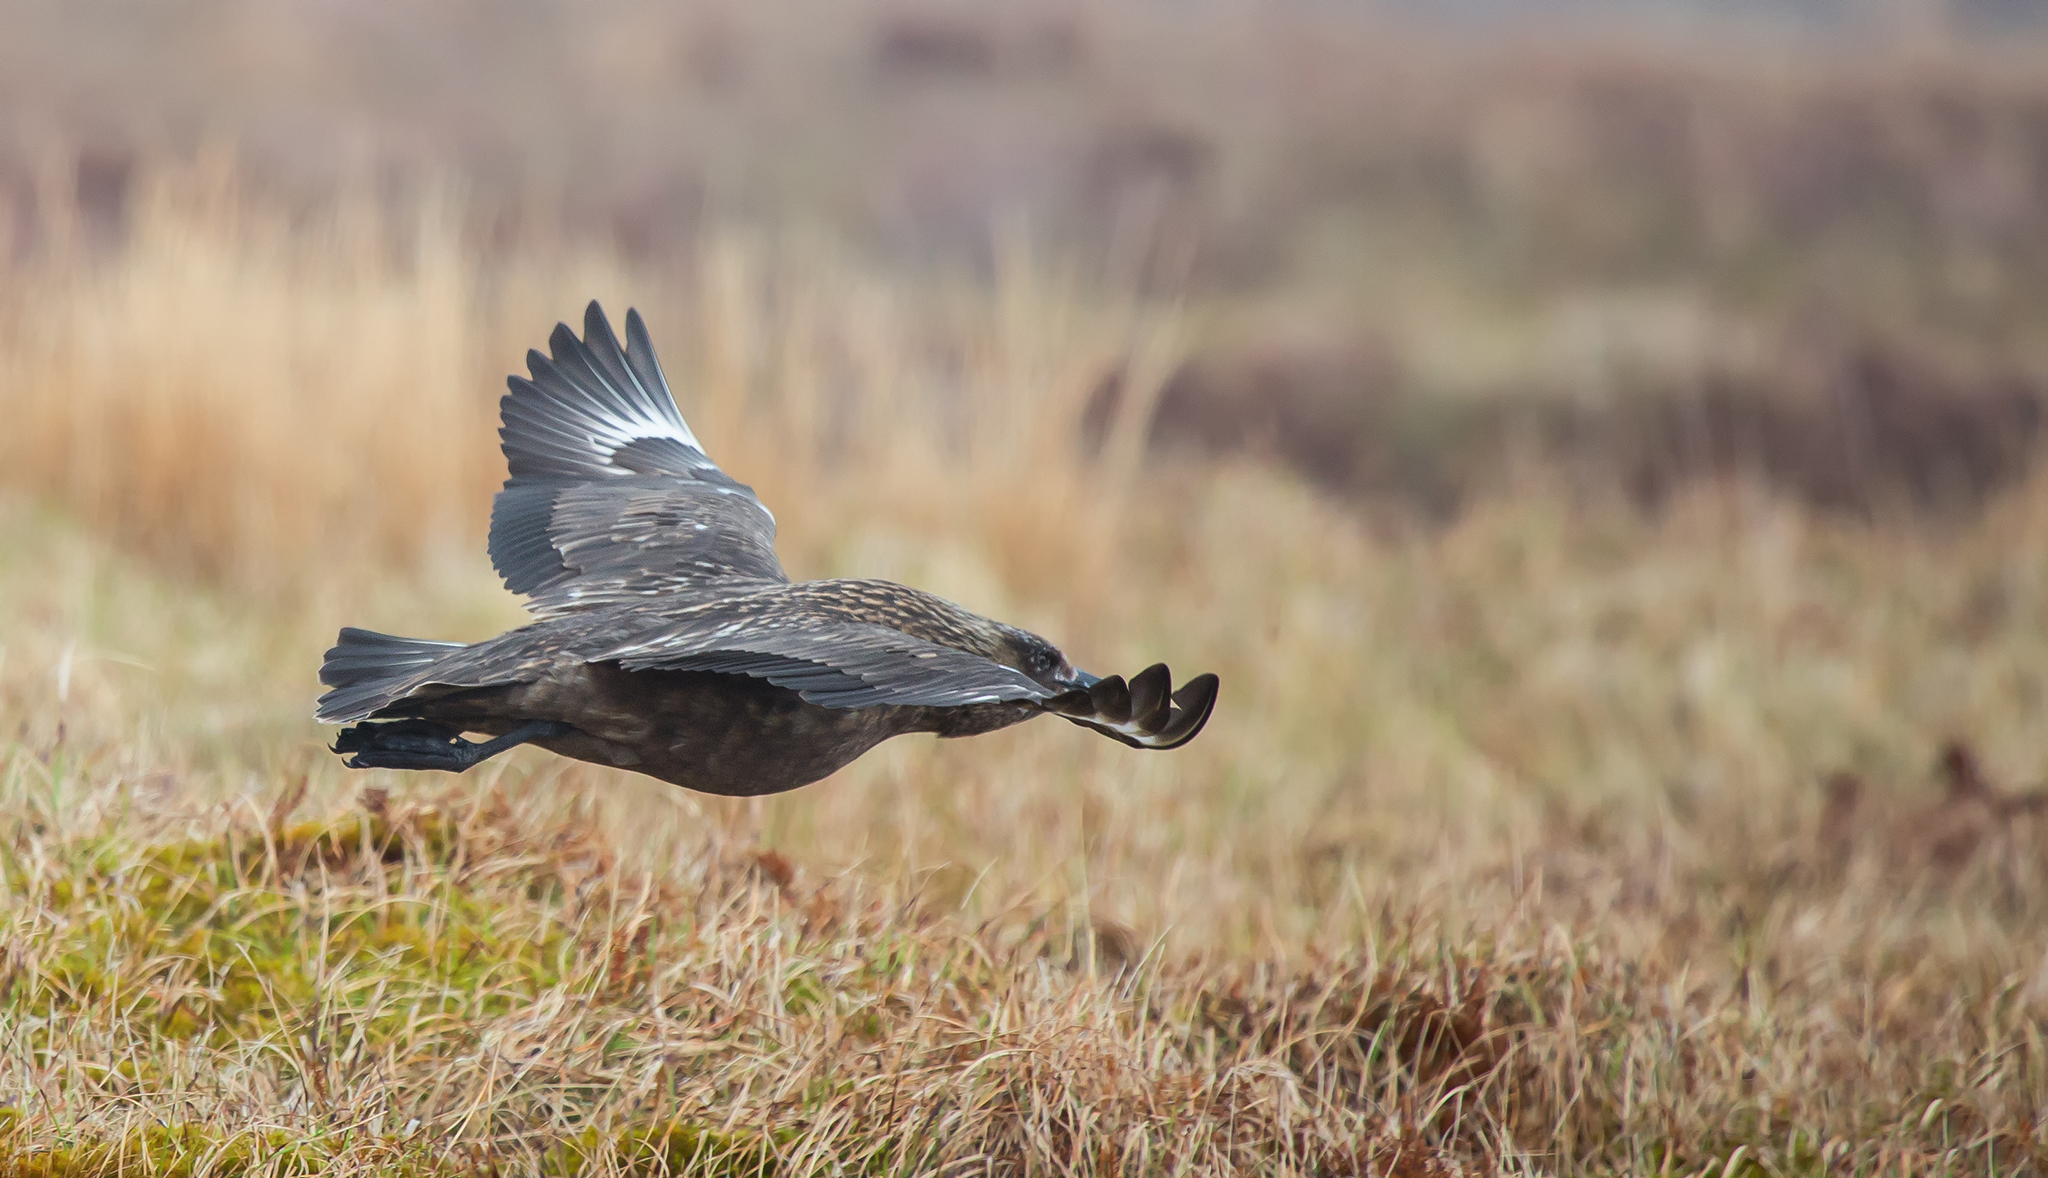    Den jager spesielt den store Havsula, og kan enkelte ganger ta tak i stjerten eller vingen til den flygende fuglen og snu den opp ned.   